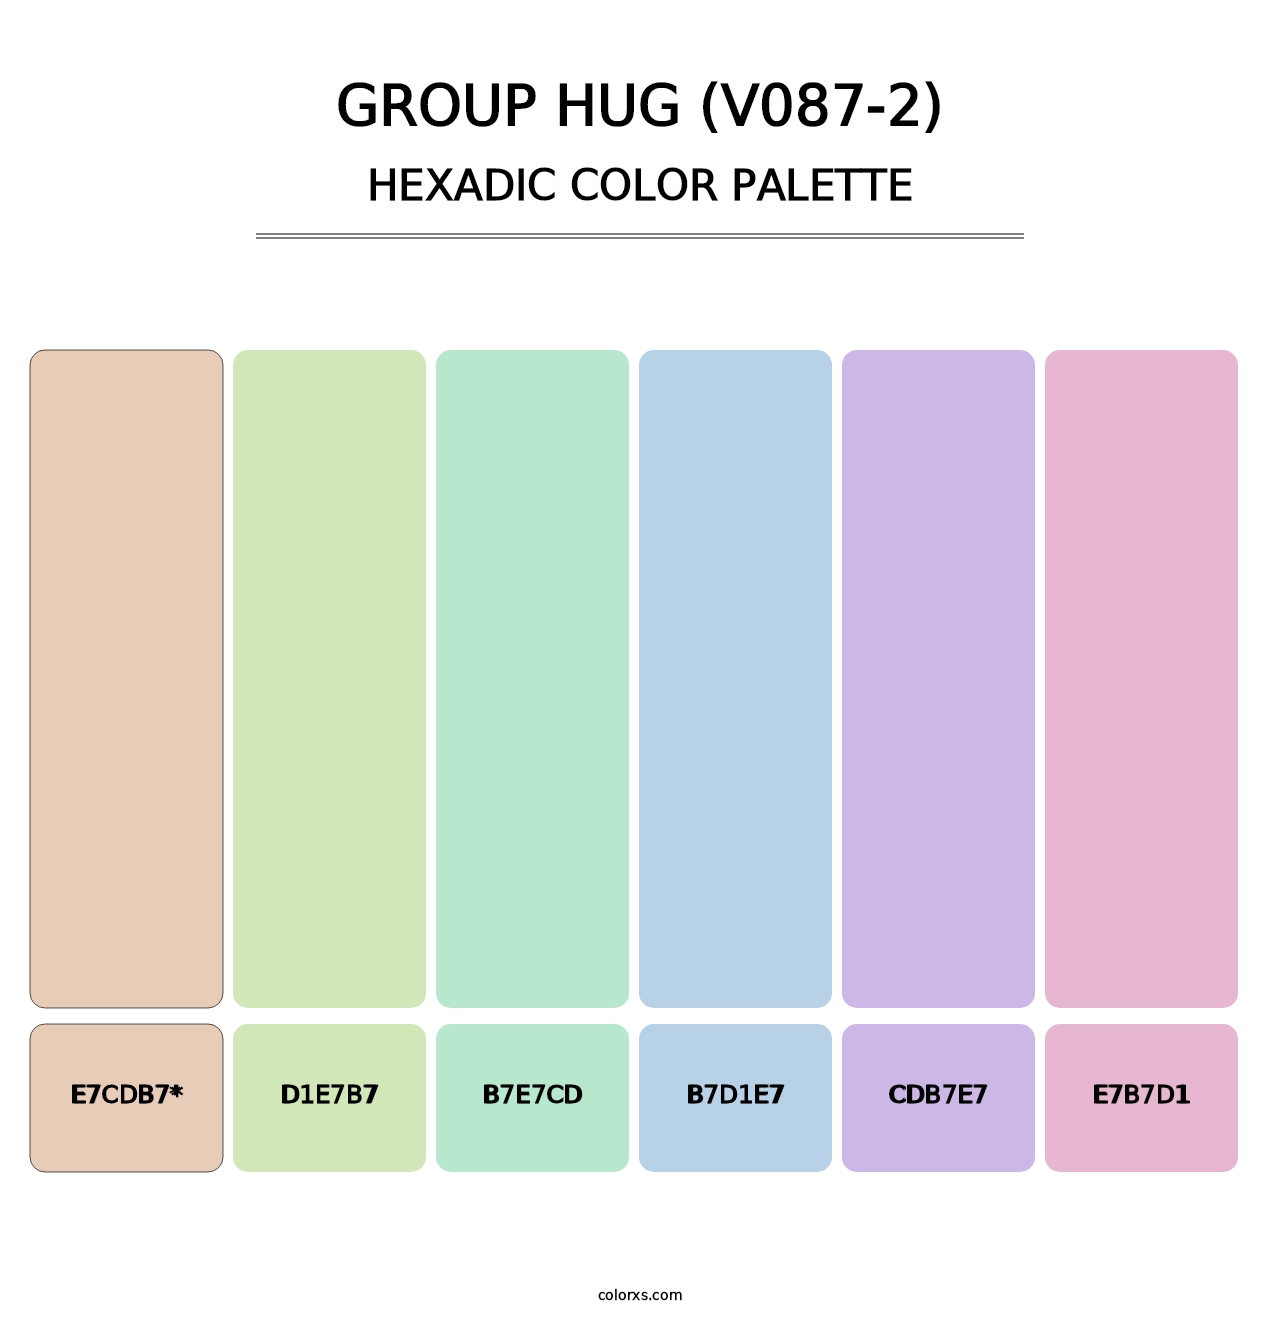 Group Hug (V087-2) - Hexadic Color Palette